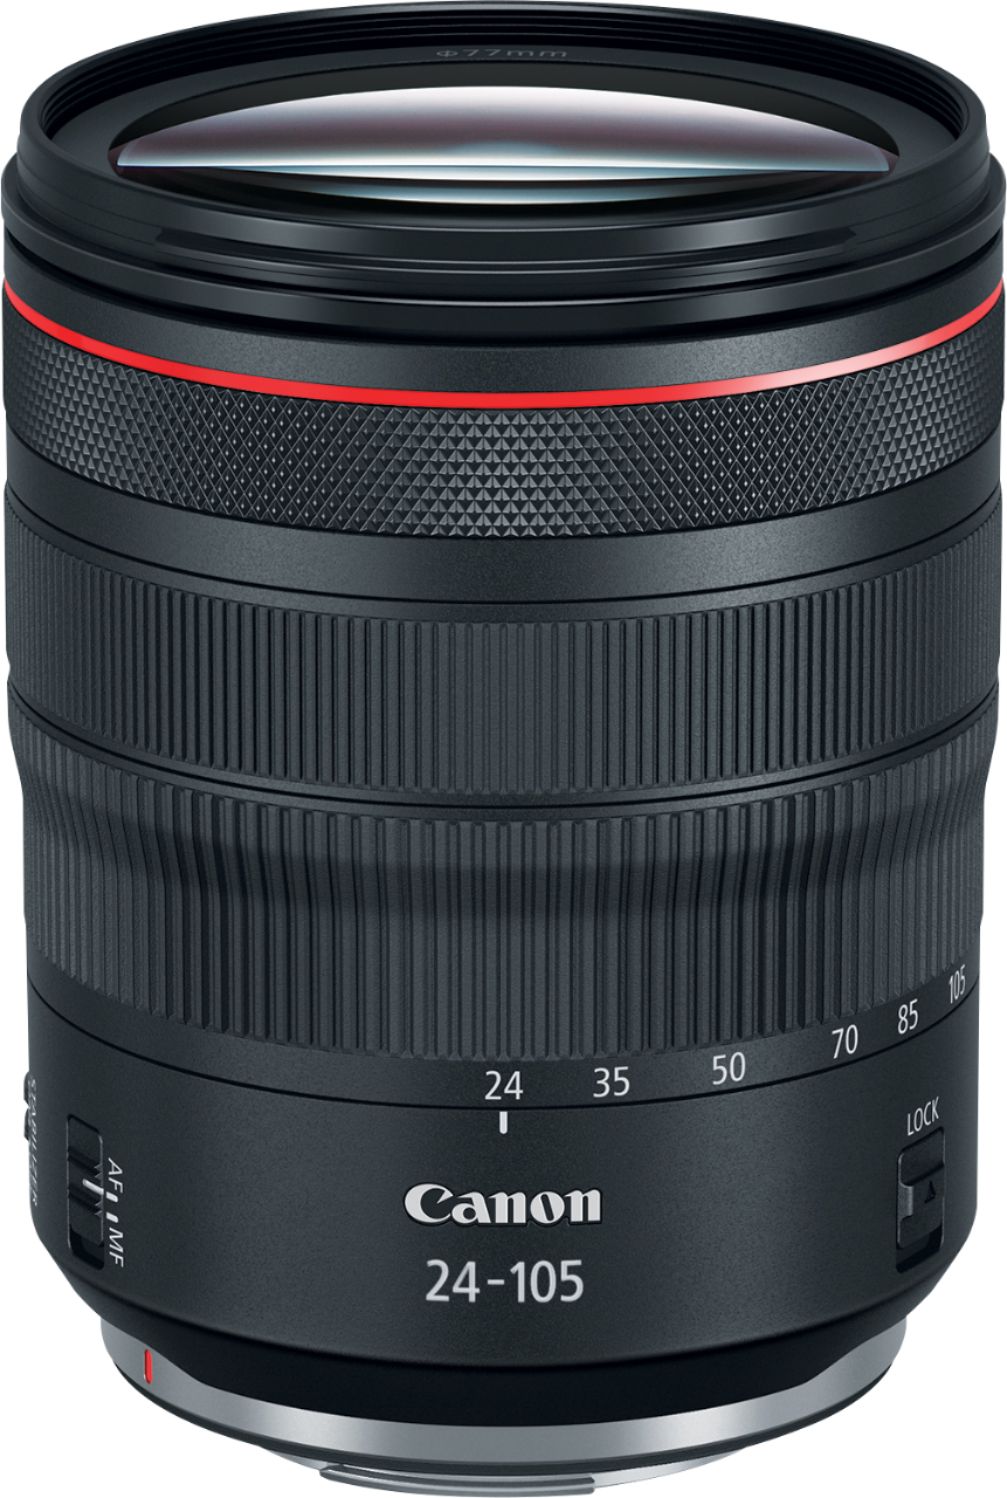 カメラ レンズ(ズーム) Canon RF 24-105mm F4 L IS USM Standard Zoom for EOS R 